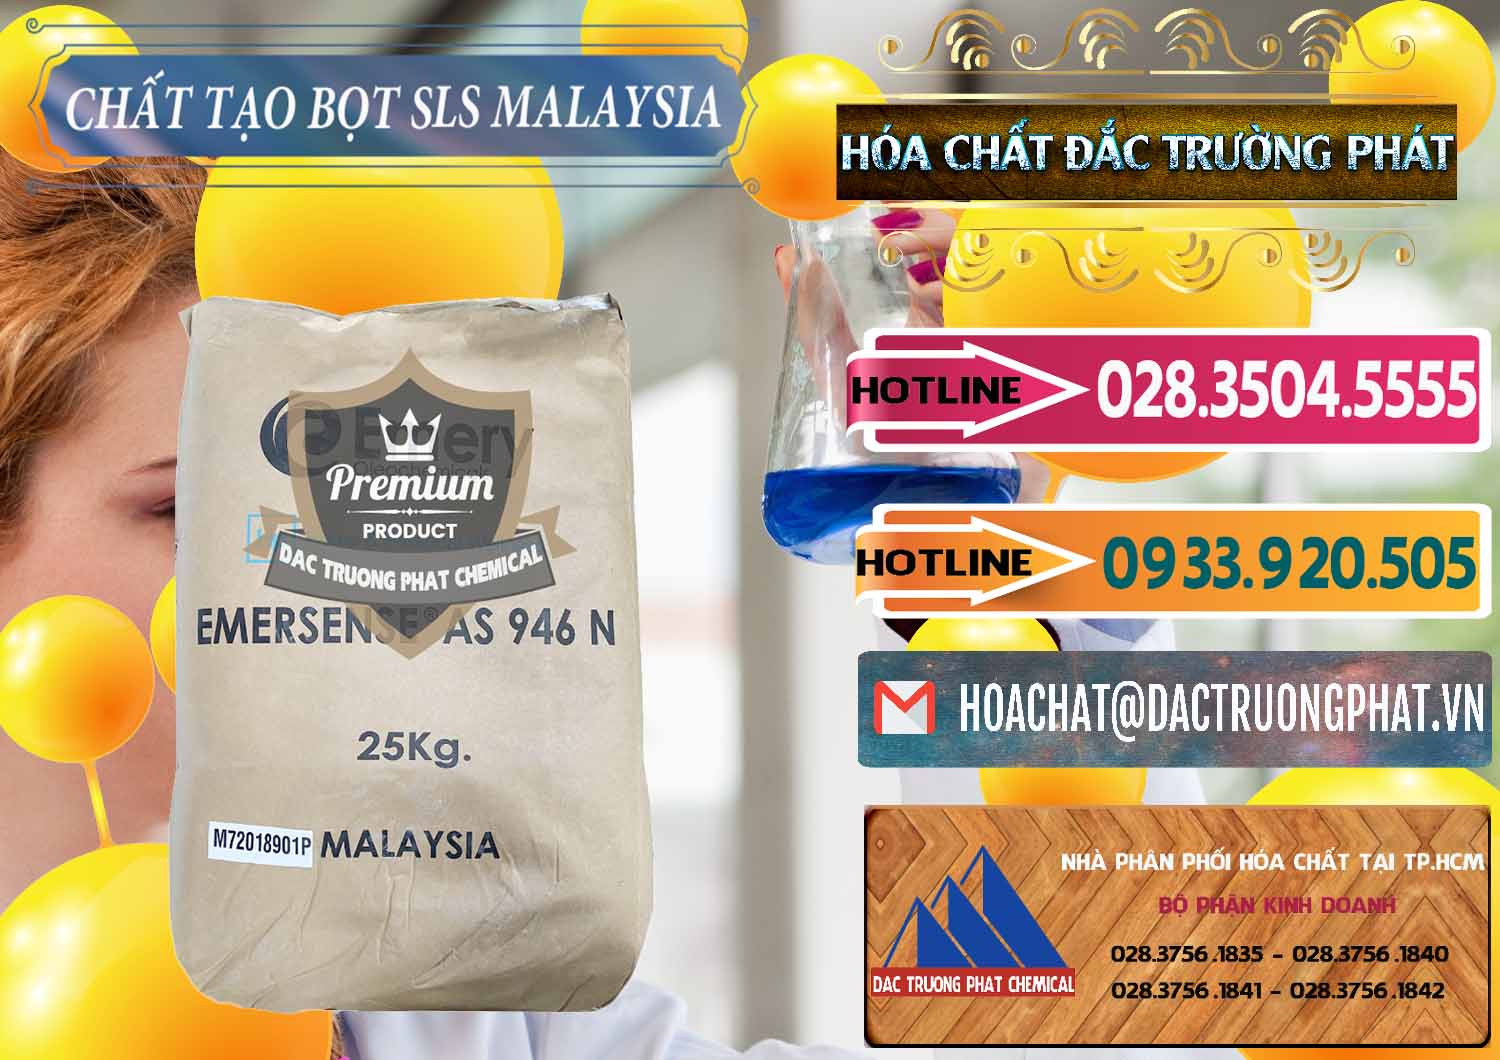 Công ty chuyên cung ứng ( bán ) Chất Tạo Bọt SLS Emery - Emersense AS 946N Mã Lai Malaysia - 0423 - Cung cấp _ nhập khẩu hóa chất tại TP.HCM - dactruongphat.vn